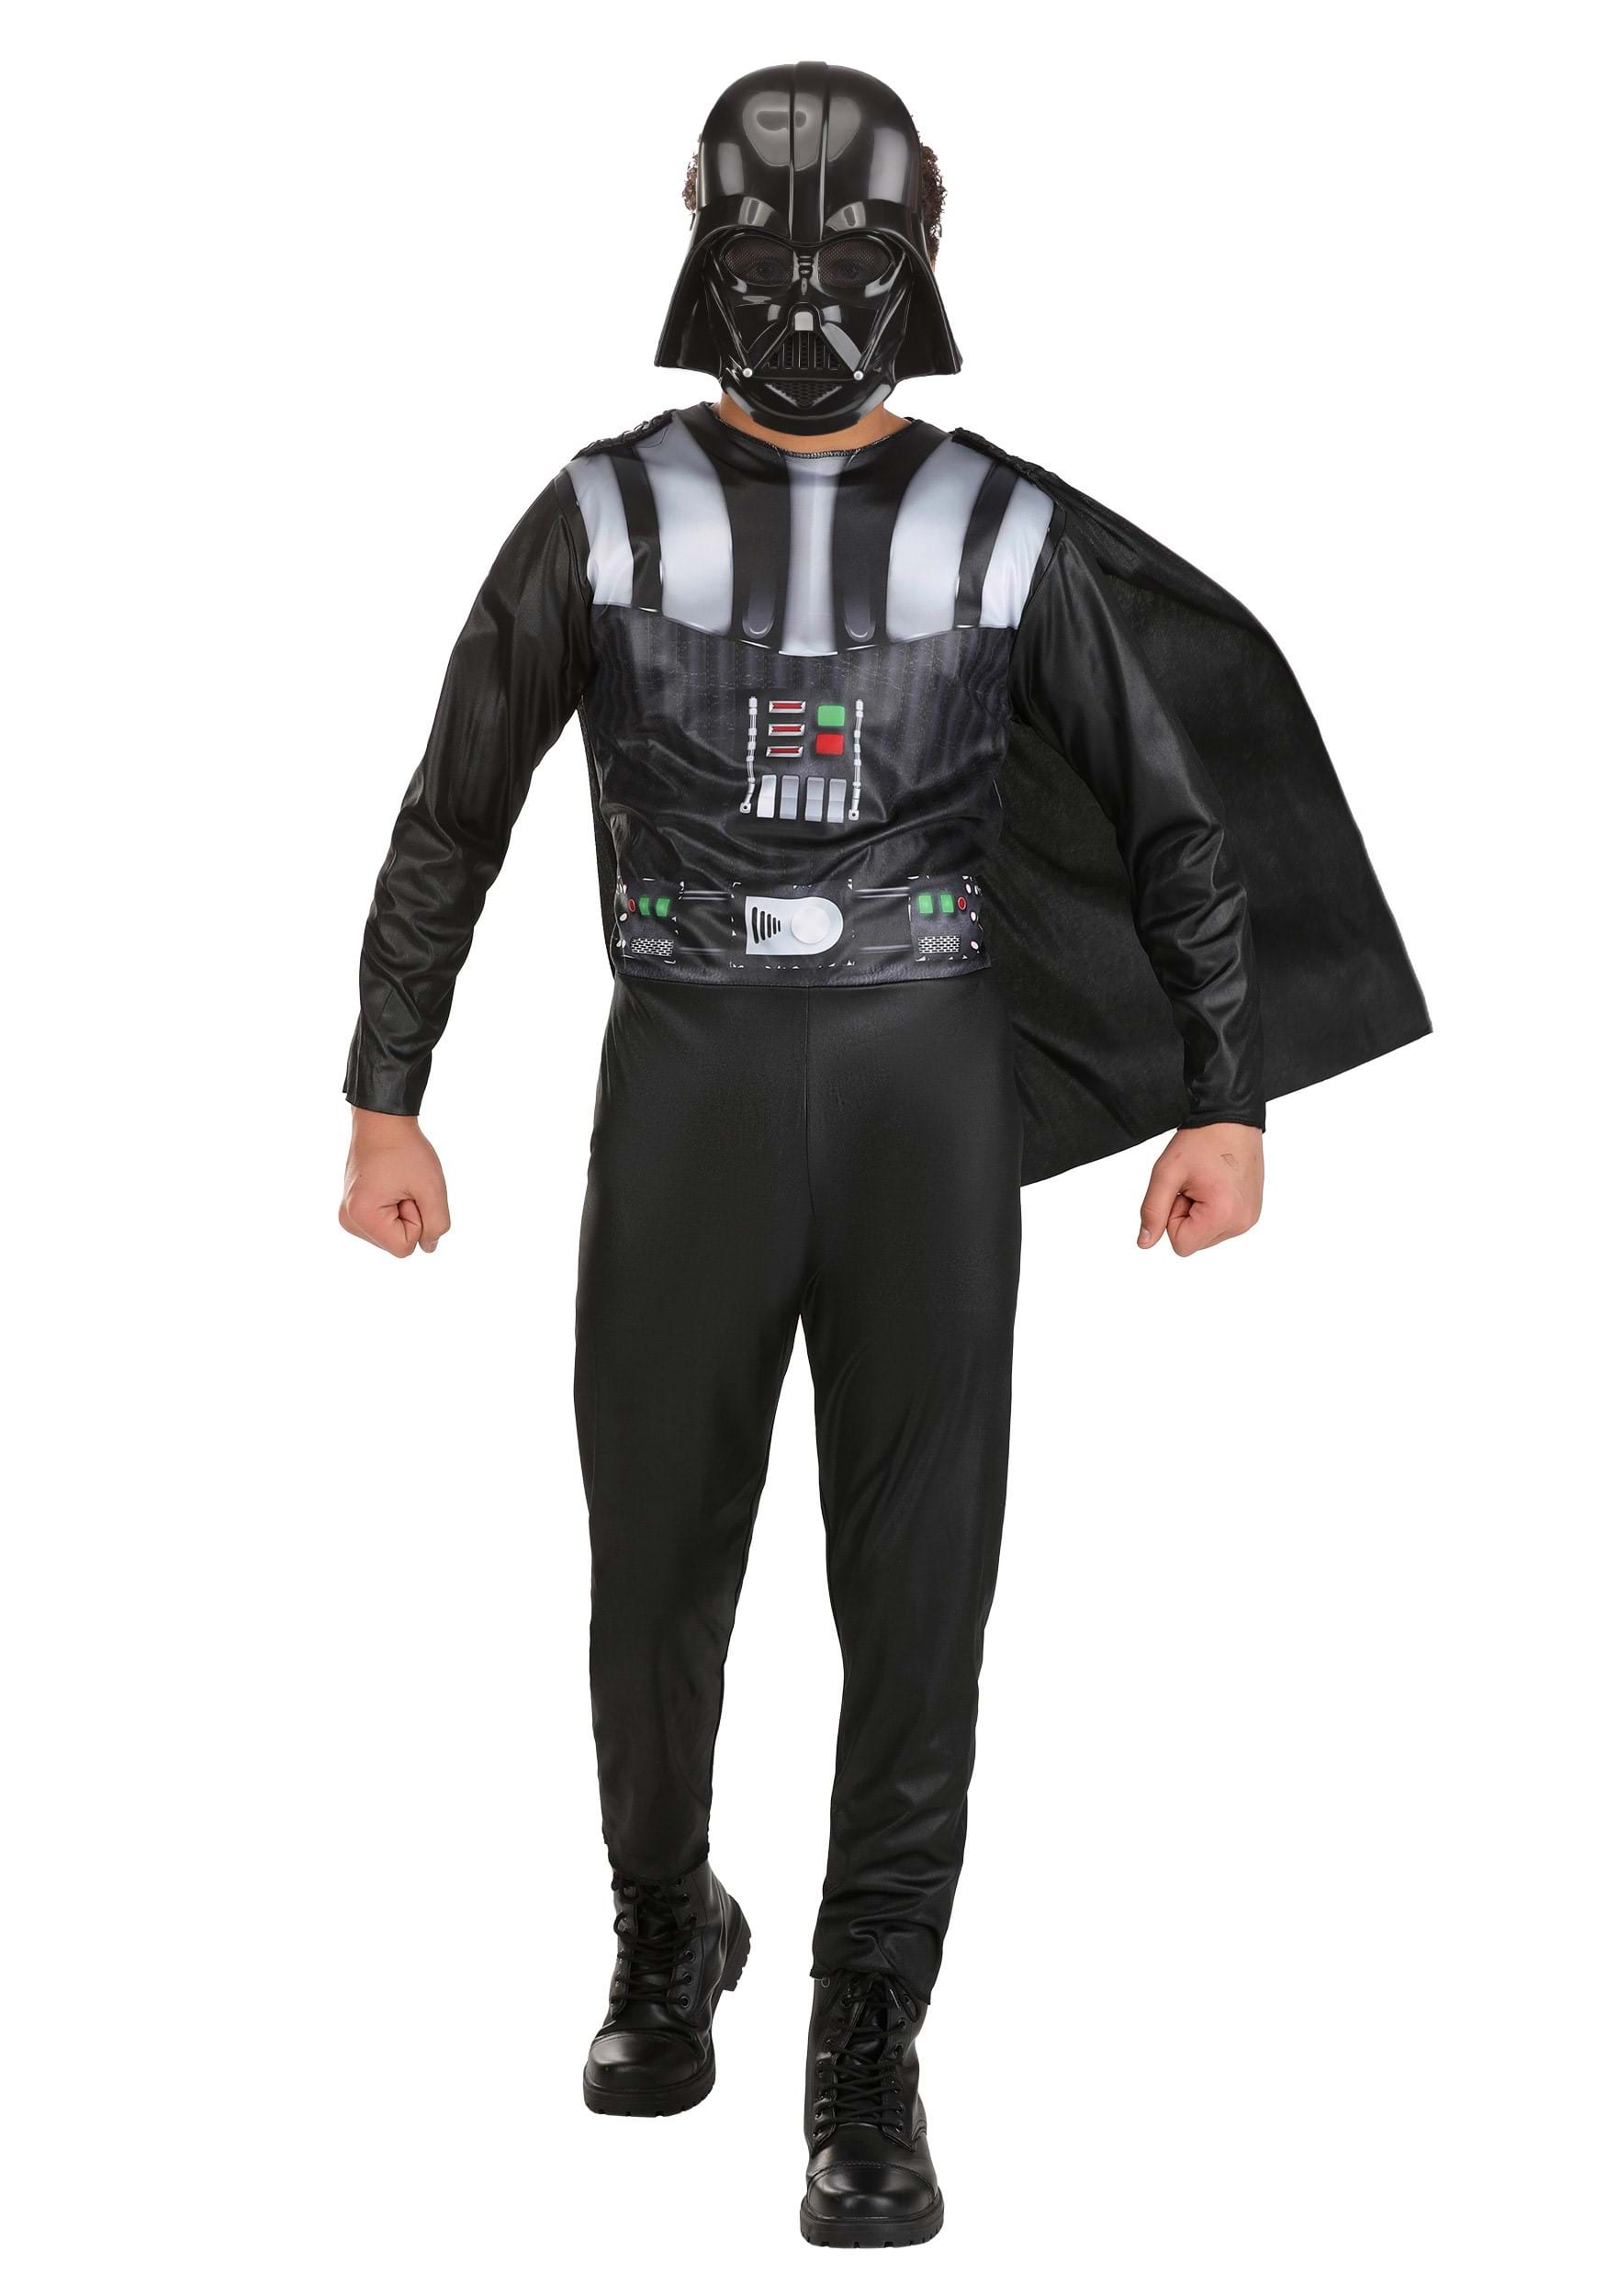 Star Wars Darth Vader Costume for Kids